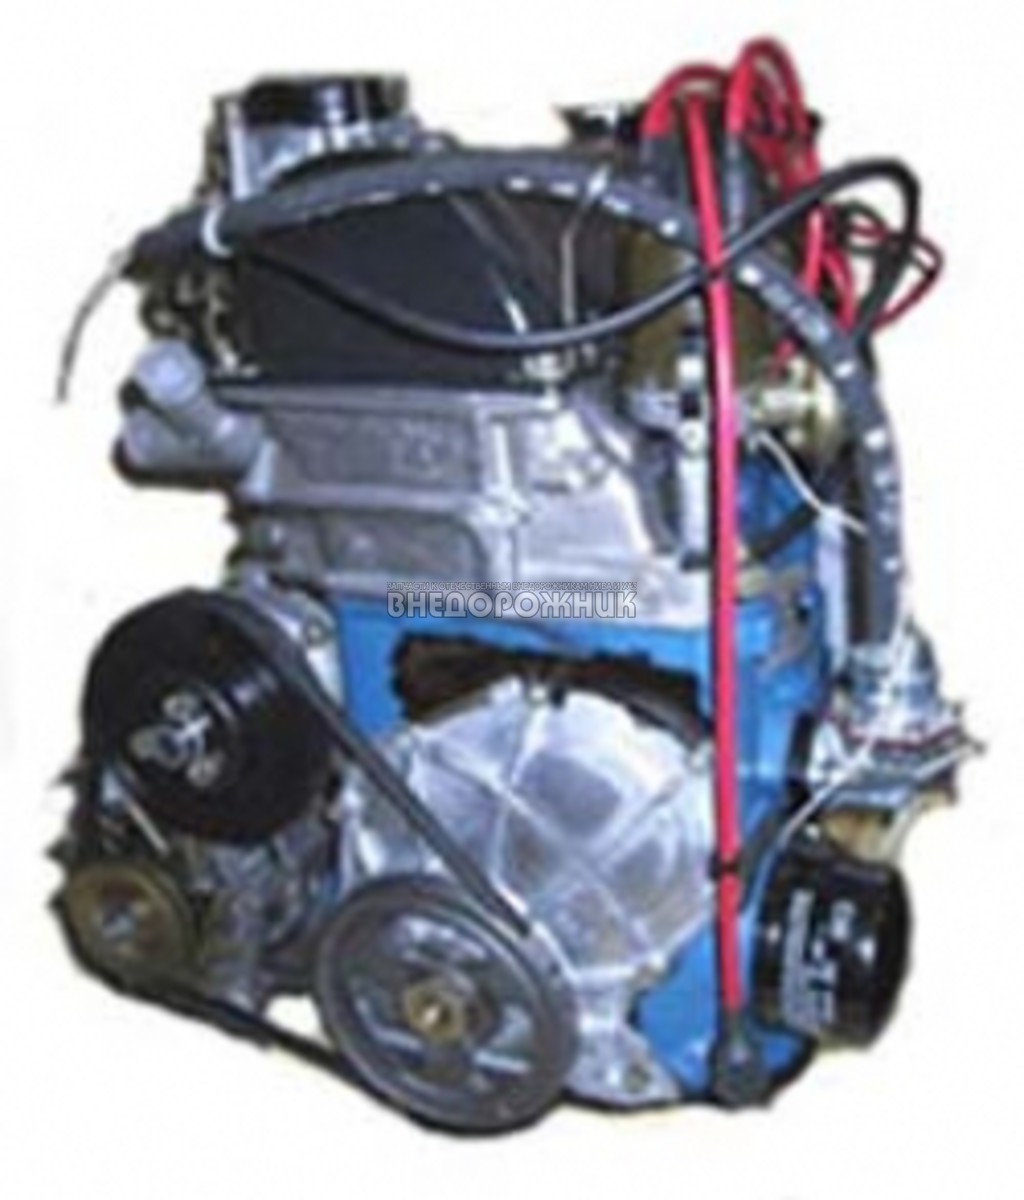 Двигатель ваз 2106 цена нового. Двигатель ВАЗ 2106 1.6. Двигатель ВАЗ 2106 1.6 карбюратор. Двигатель от ВАЗ 2106 1.6. Двигатель ВАЗ 2106 1.6 8 кл..